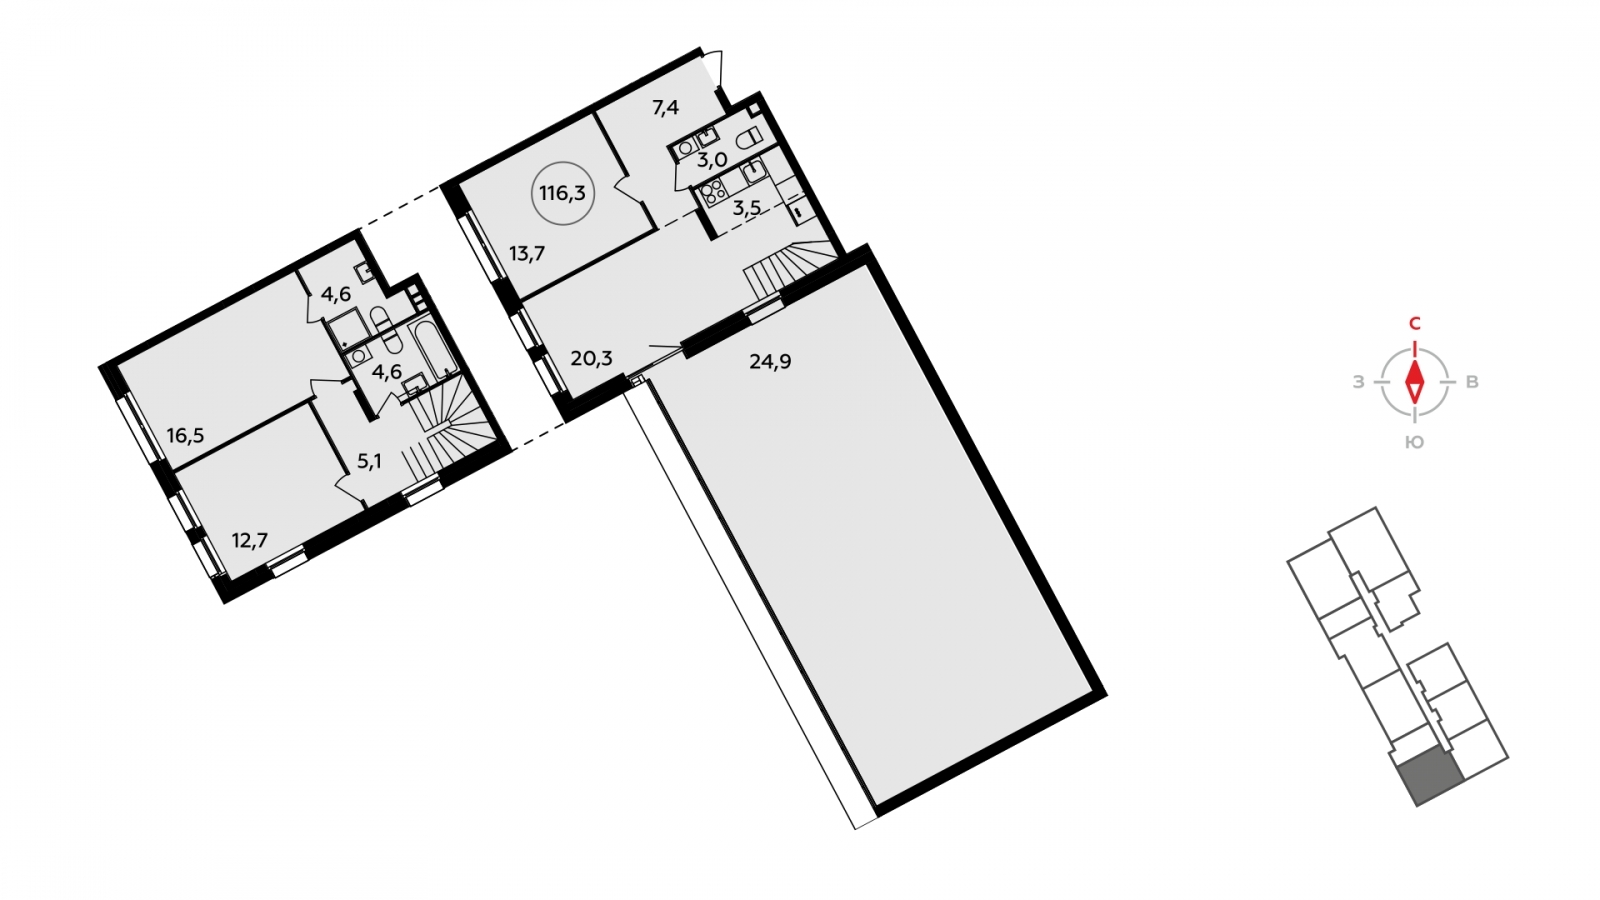 Продается двухуровневая 4-комнатная квартира с европланировкой с террасой в новом жилом комплексе, недалеко от метро